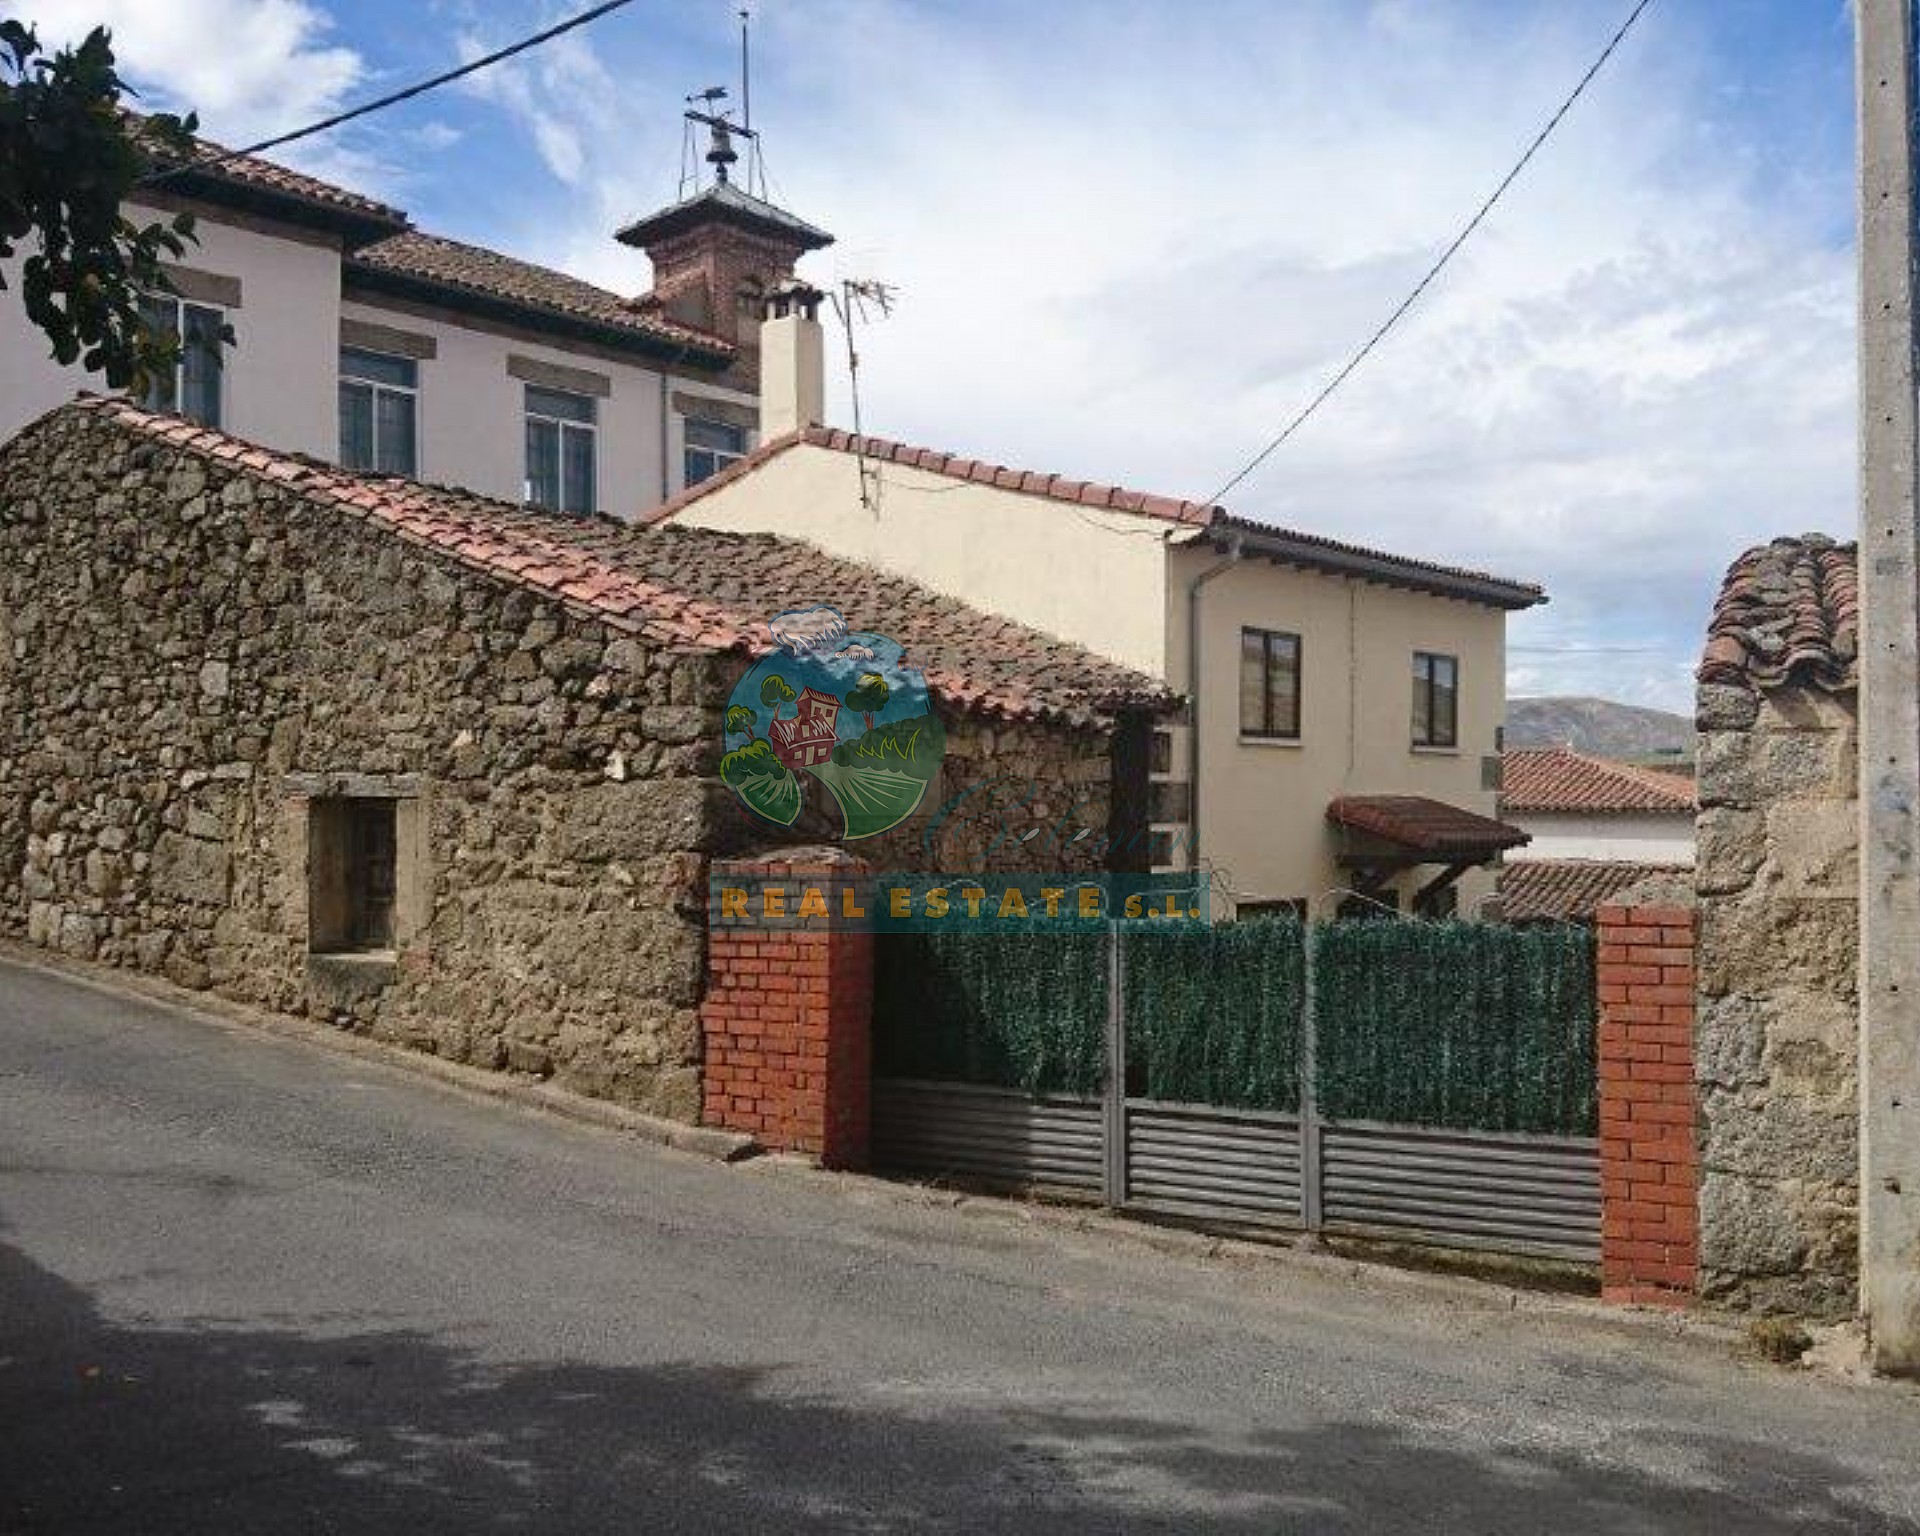  Casa pueblo en Sierra de Gredos.